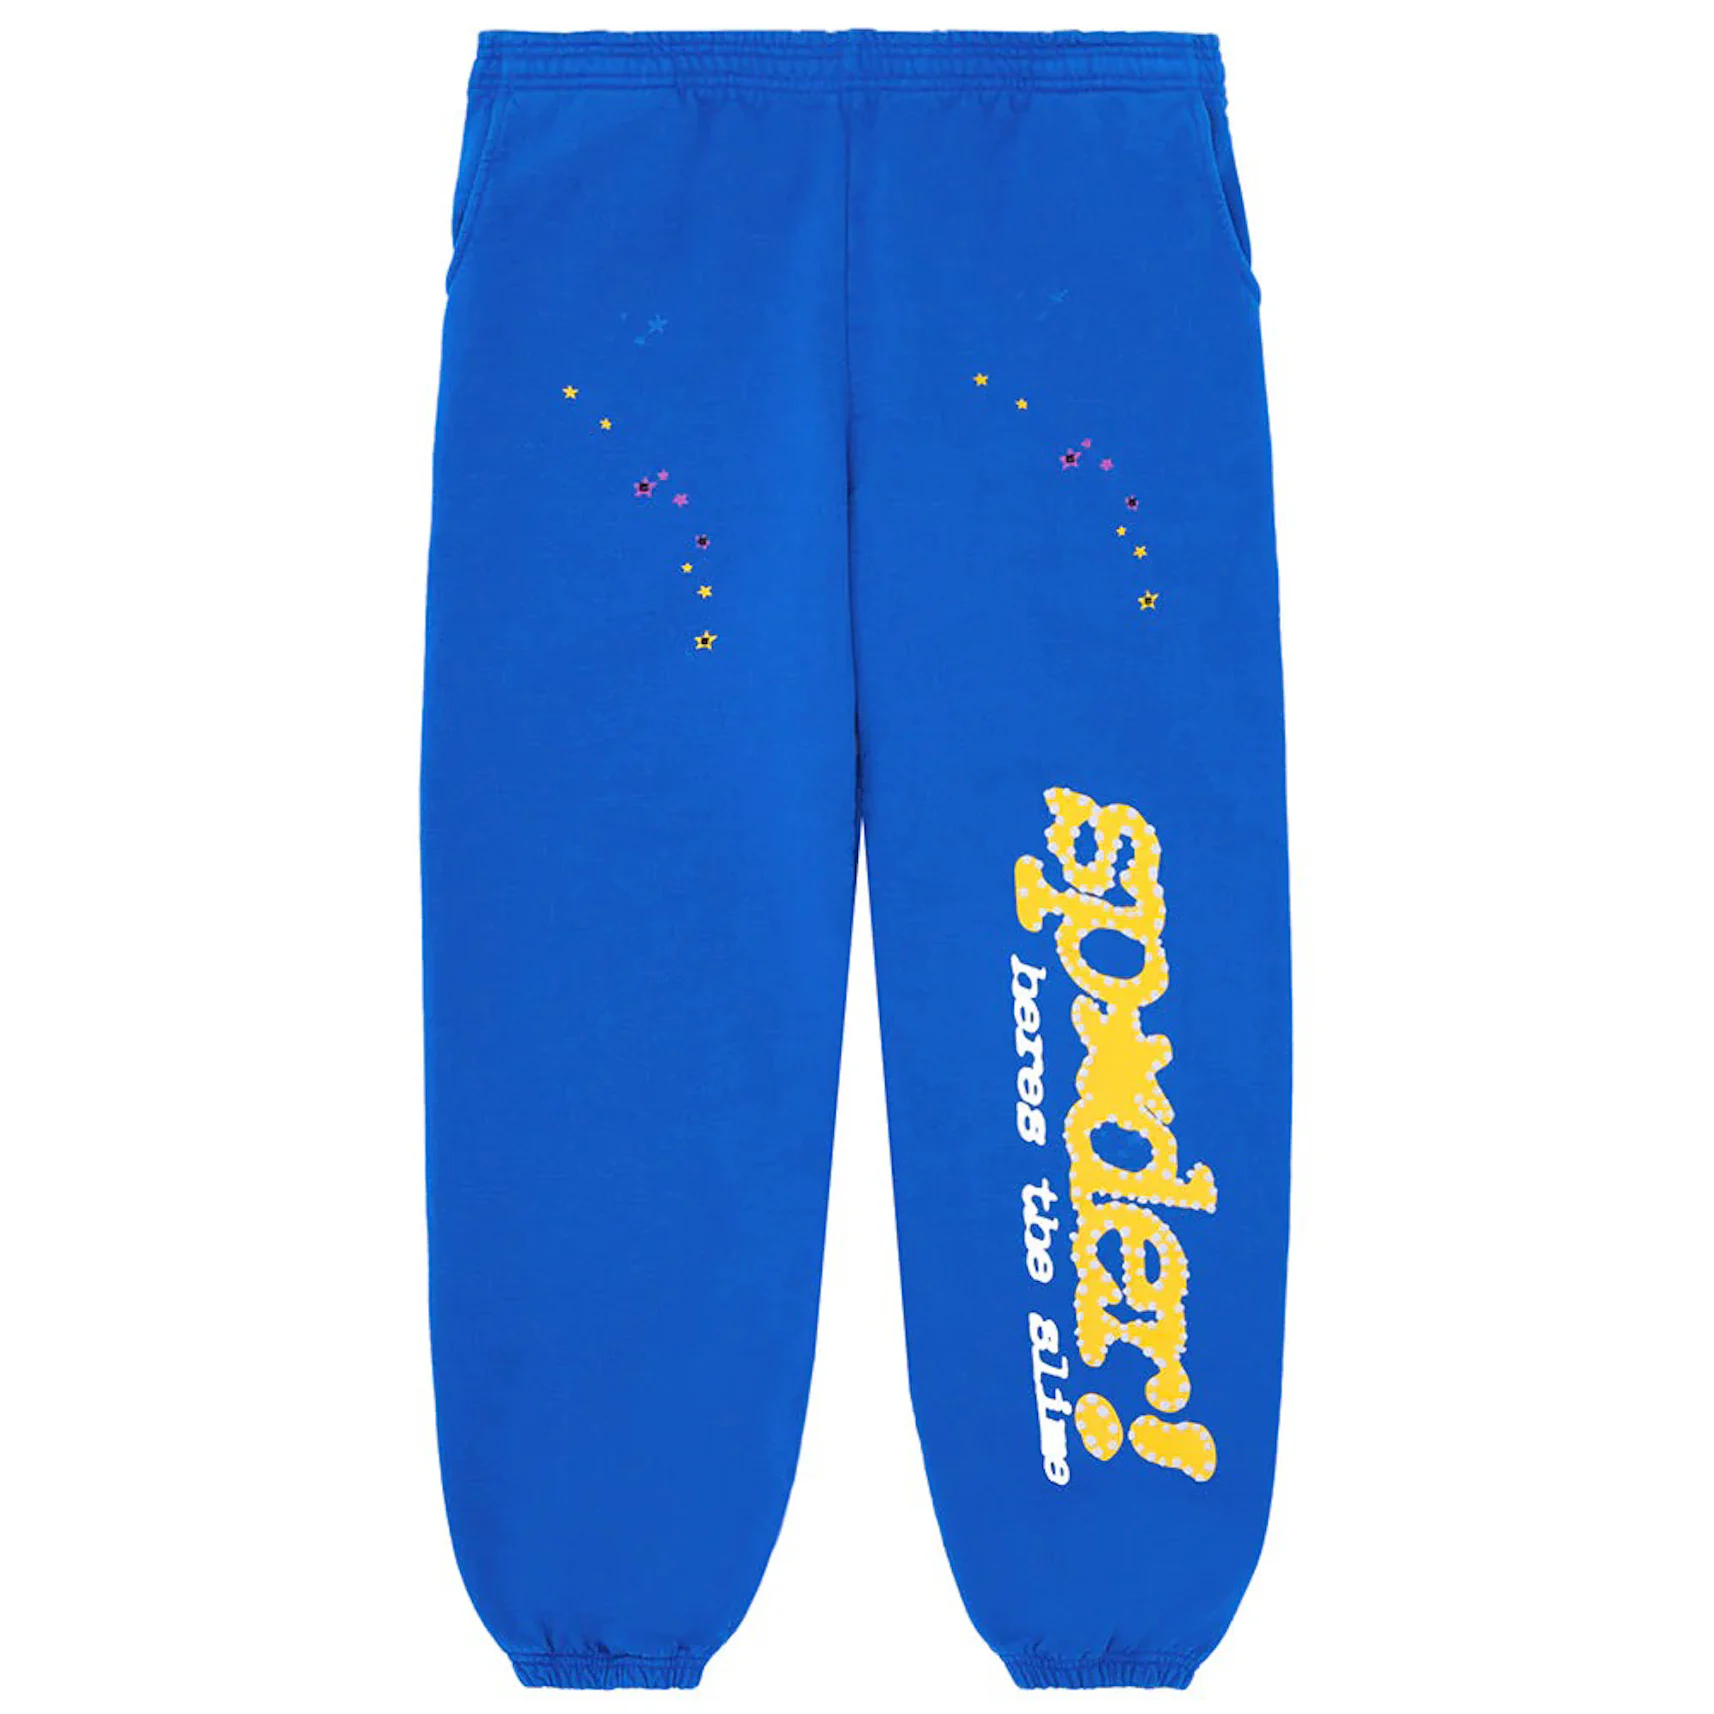 Sp5der Sweatpants Sky Blue – The Hype